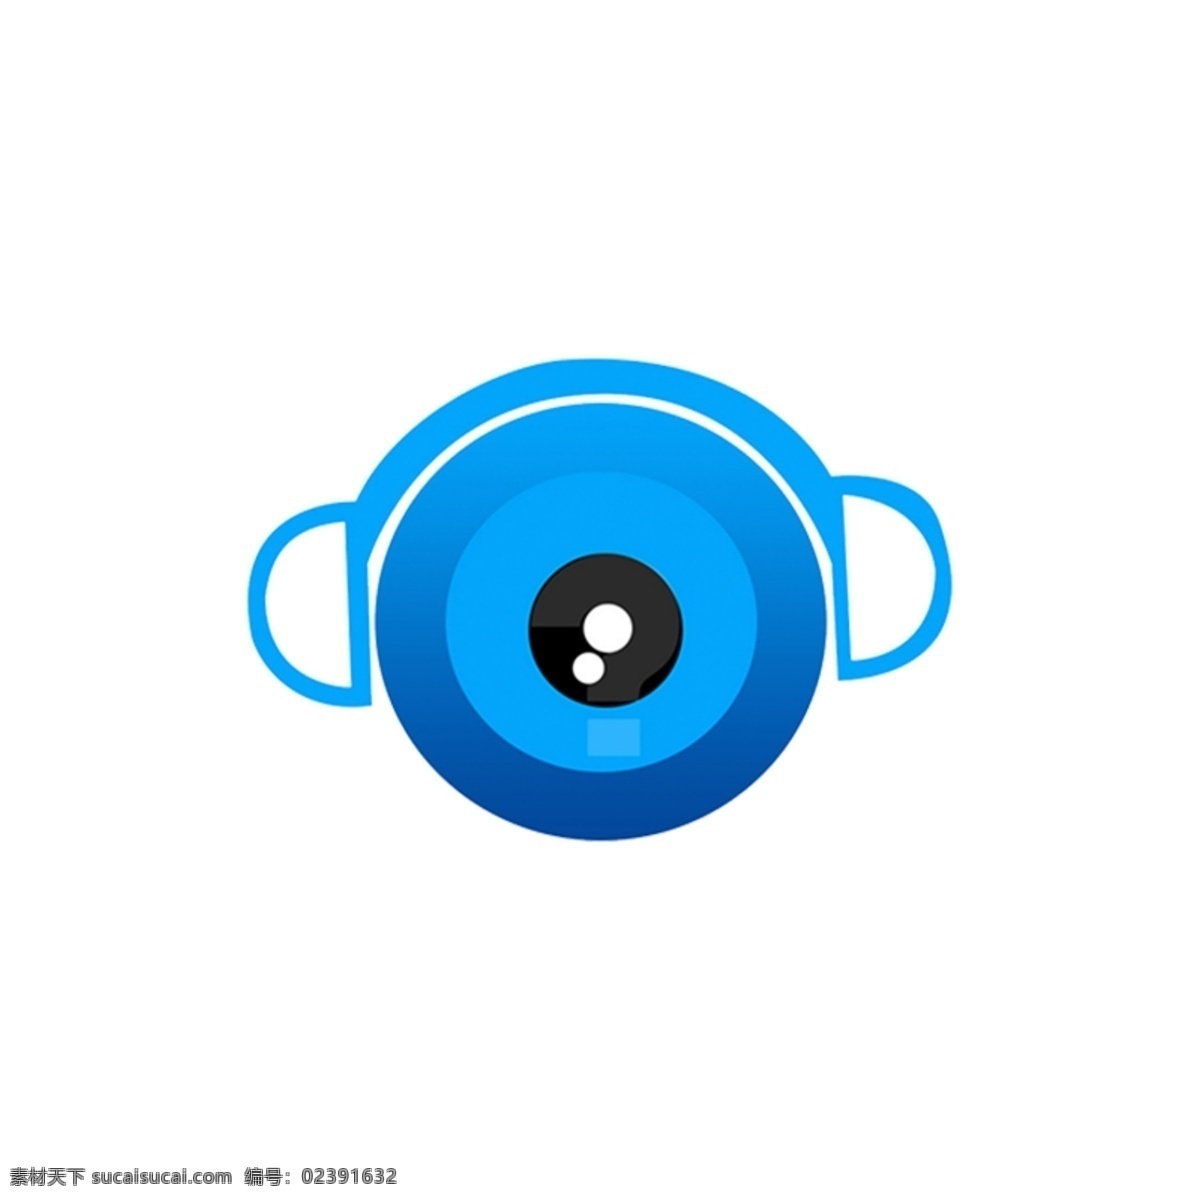 扁平摄像耳麦 眼睛 蓝色 标志 创意 简约 扁平 摄像 耳麦 logo icon 直播logo